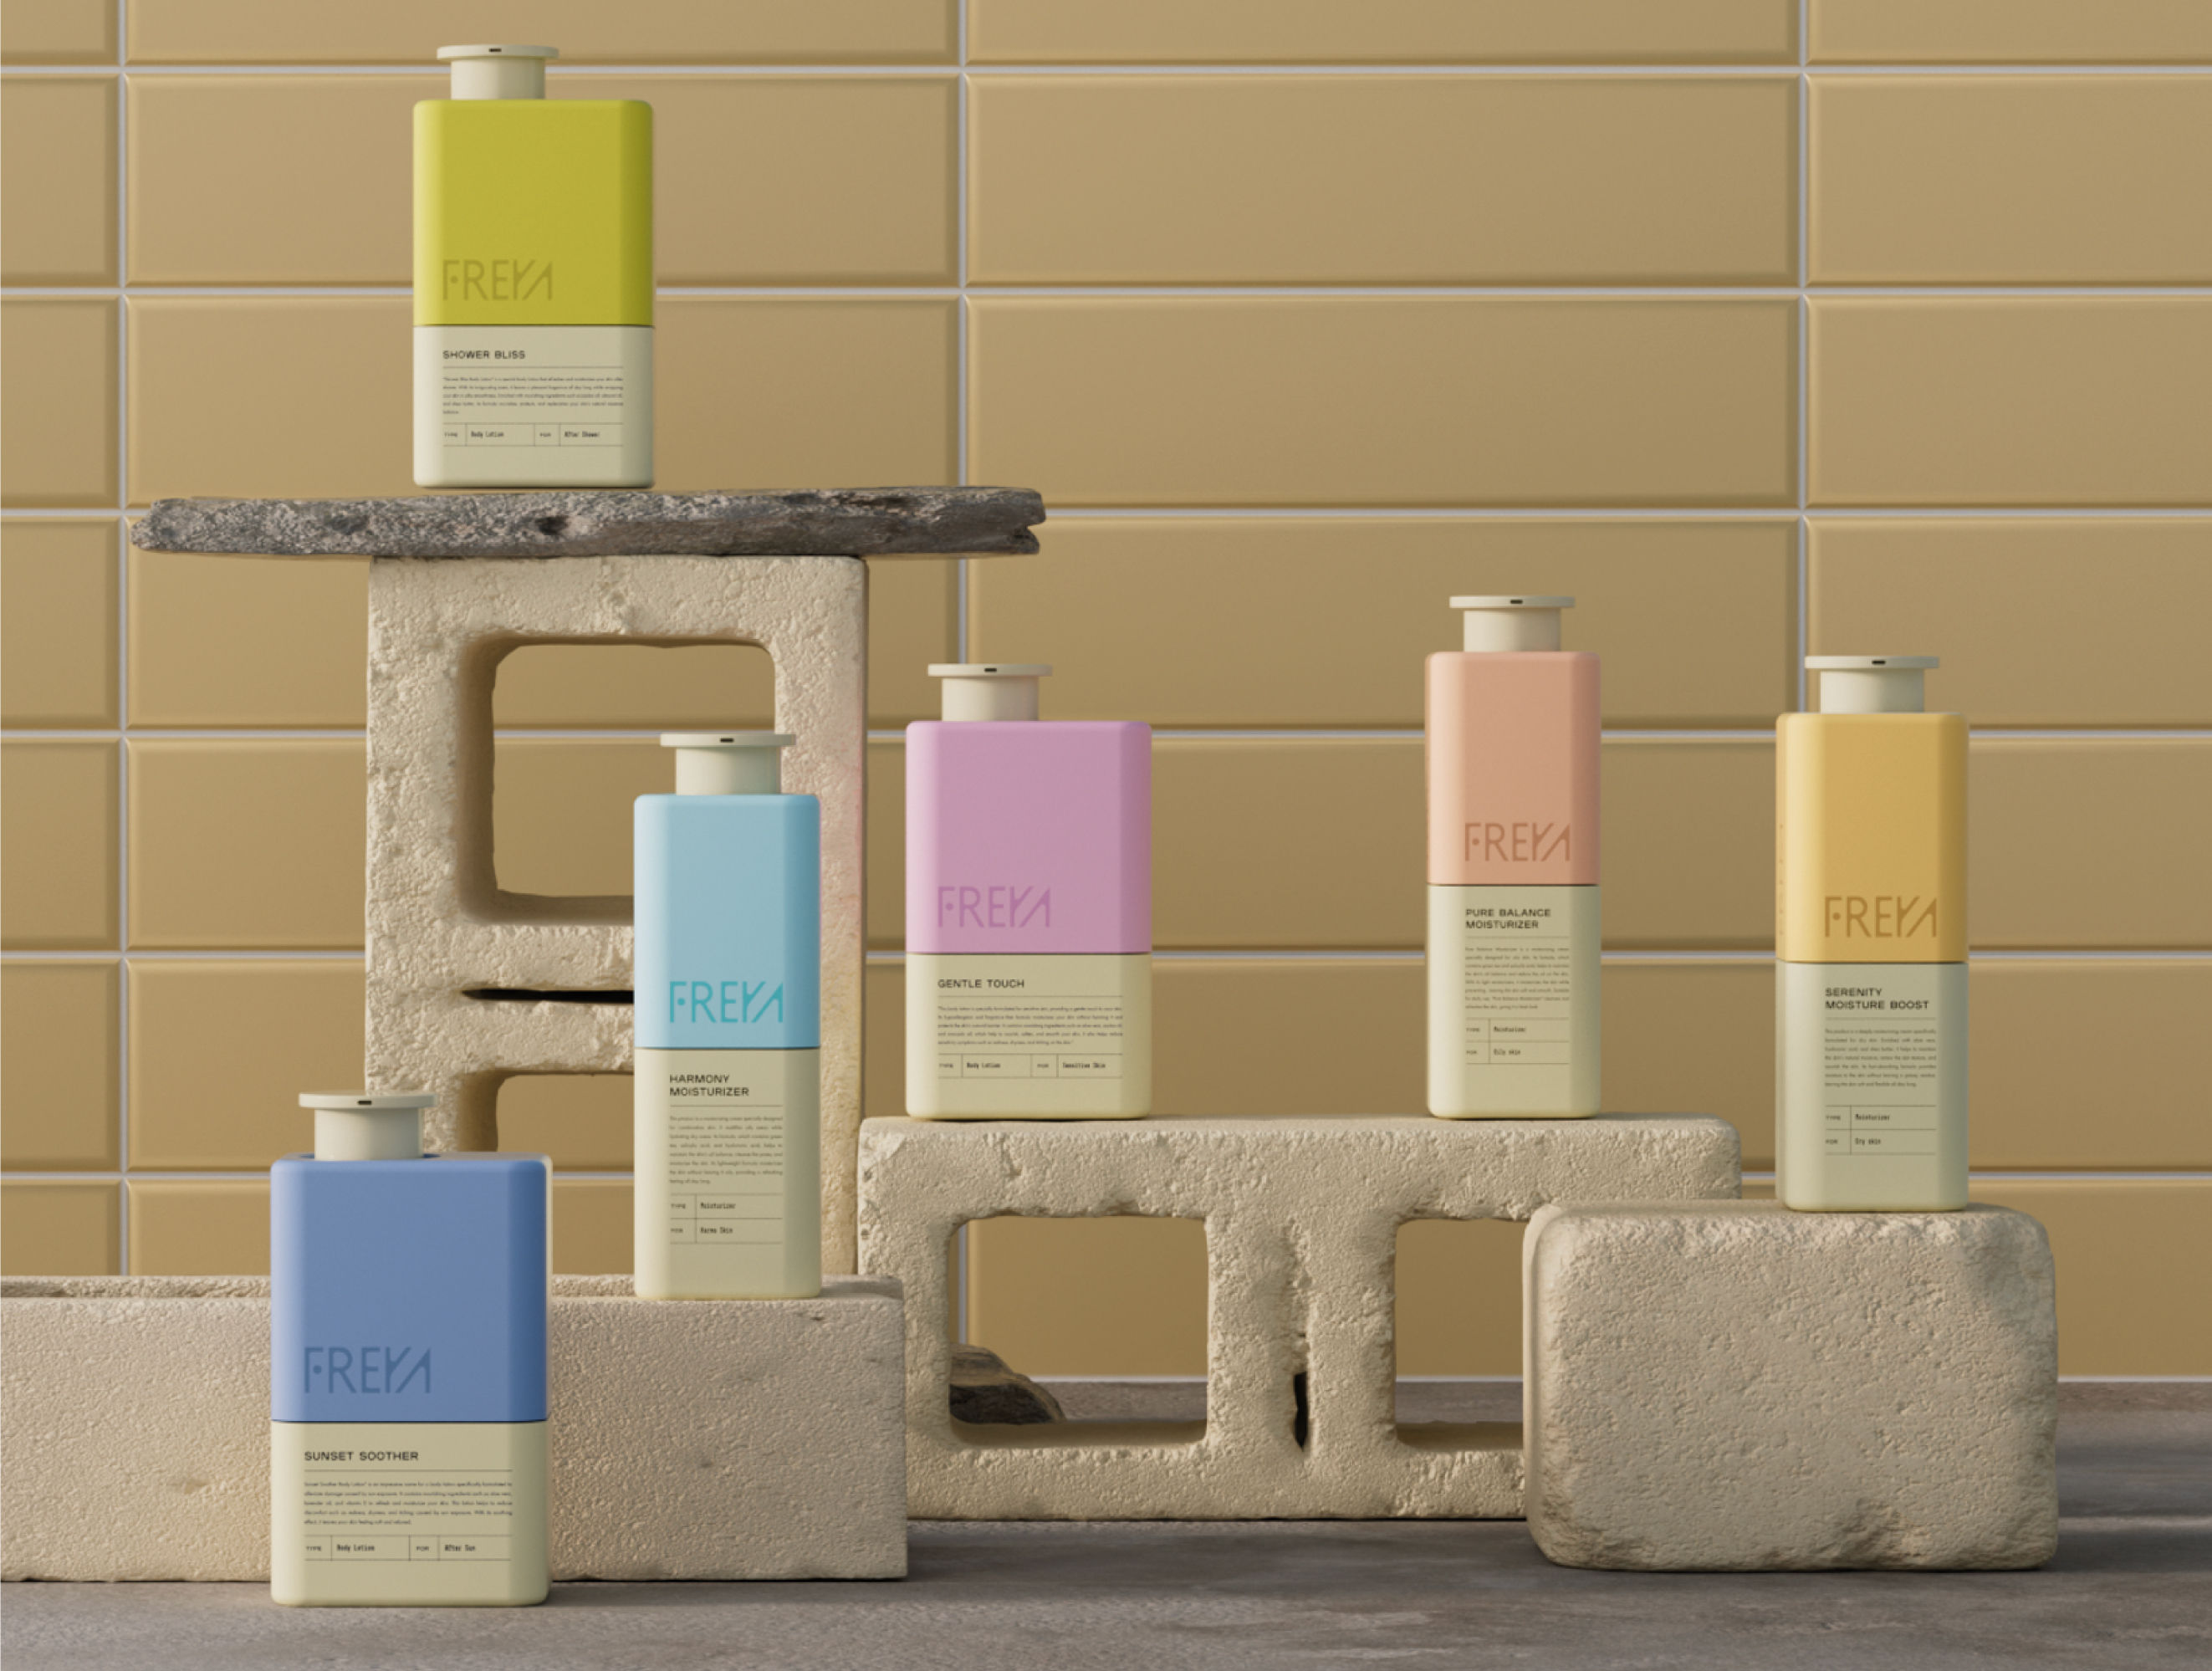 Freya / Skincare packaging by Mustafa Akülker for Marka Works Branding  Agency on Dribbble